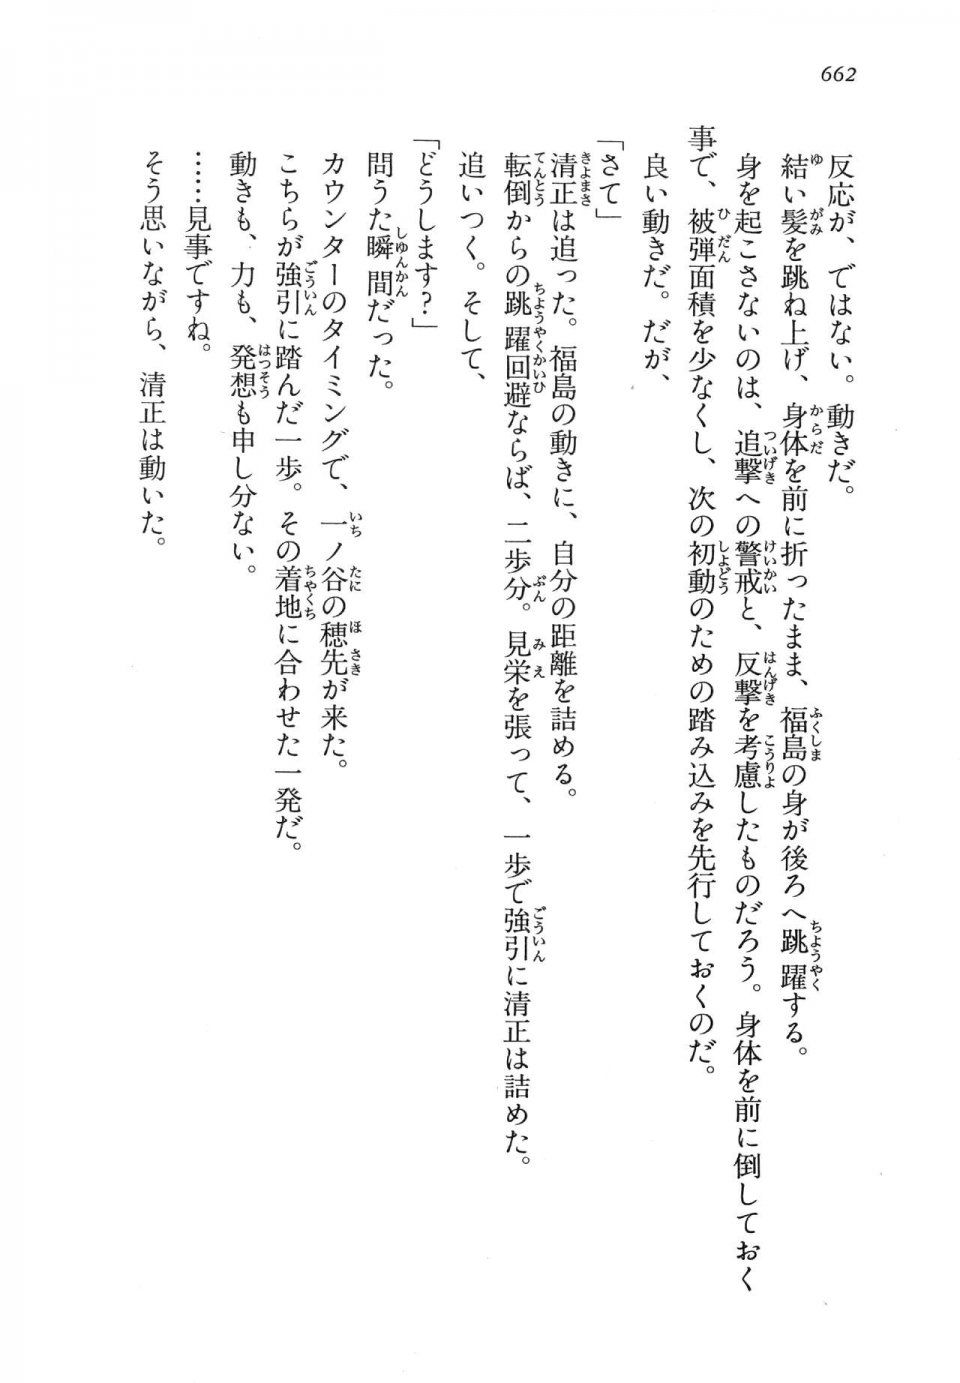 Kyoukai Senjou no Horizon LN Vol 14(6B) - Photo #662